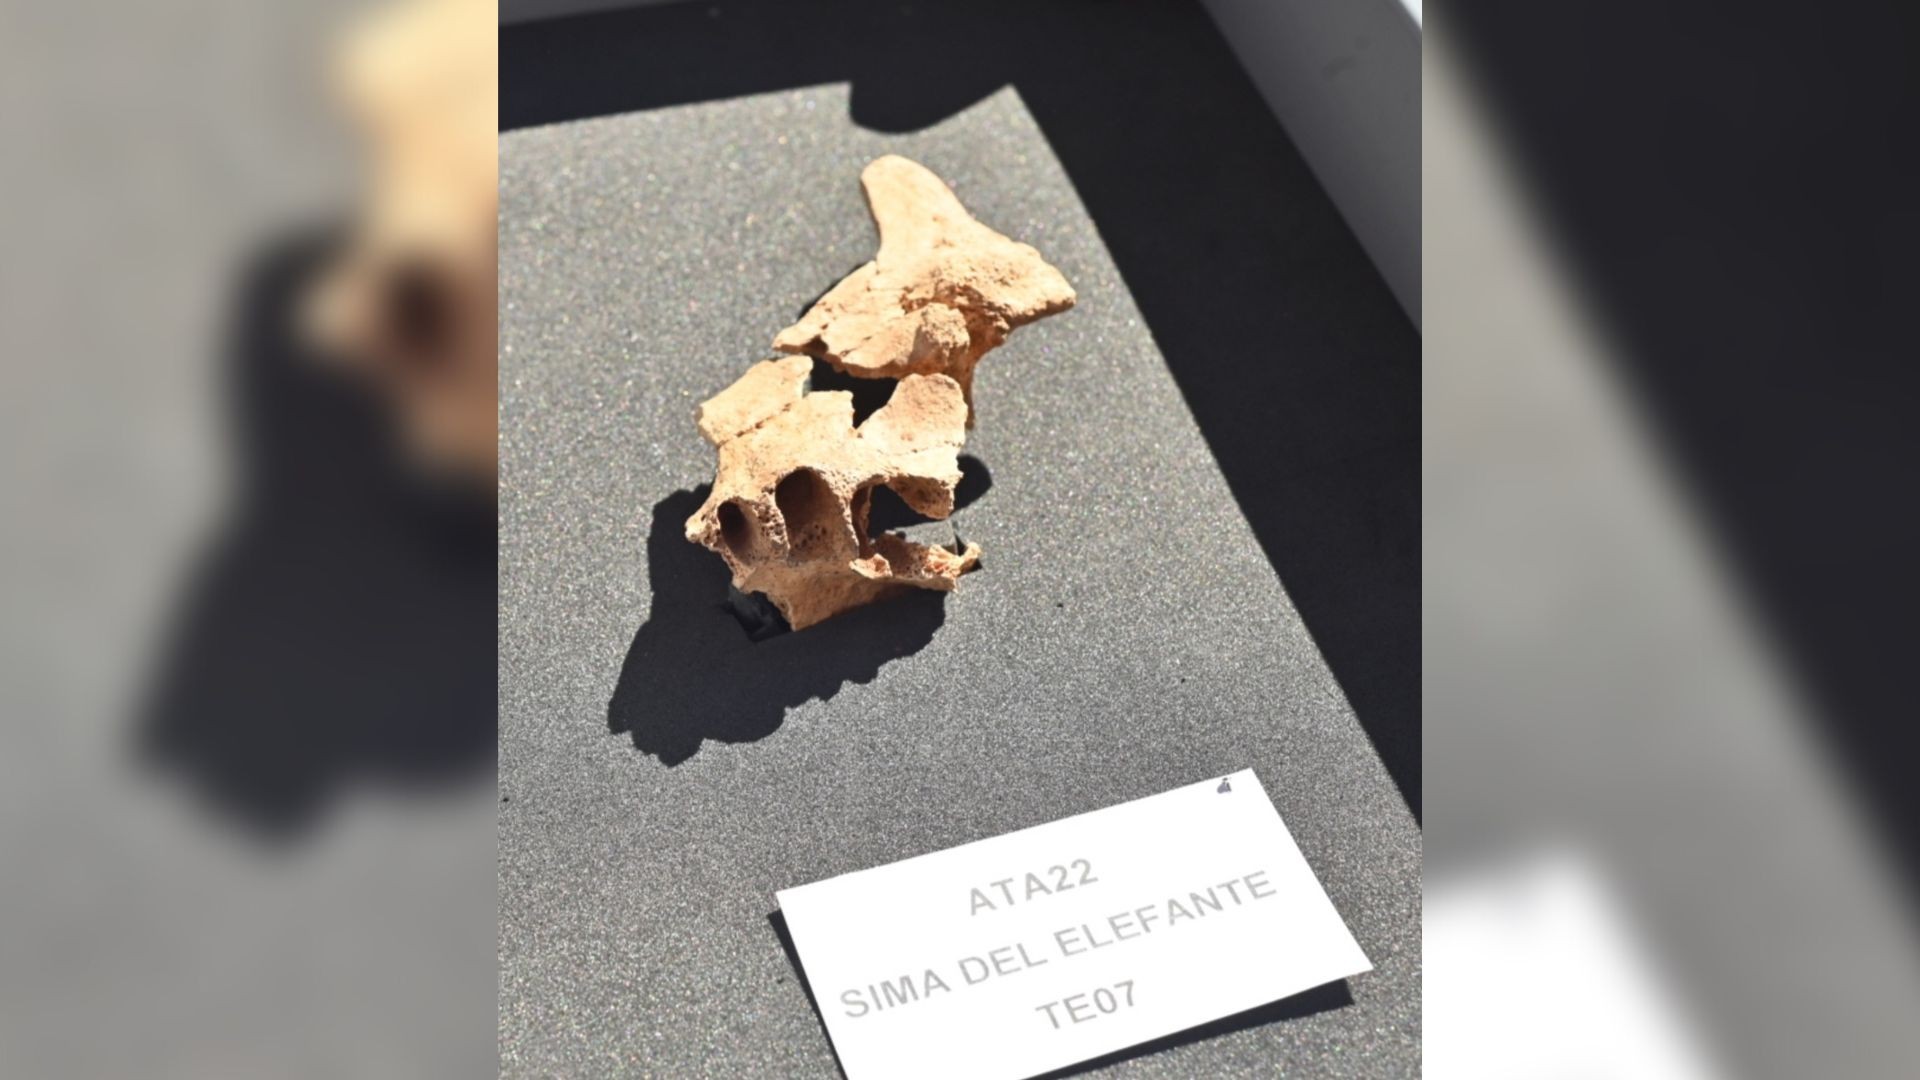 Face parcial de um hominídeo encontrado no sítio Sima del Elefante, na Espanha  (Foto: Susana Santamaria / Fundação Atapuerca)